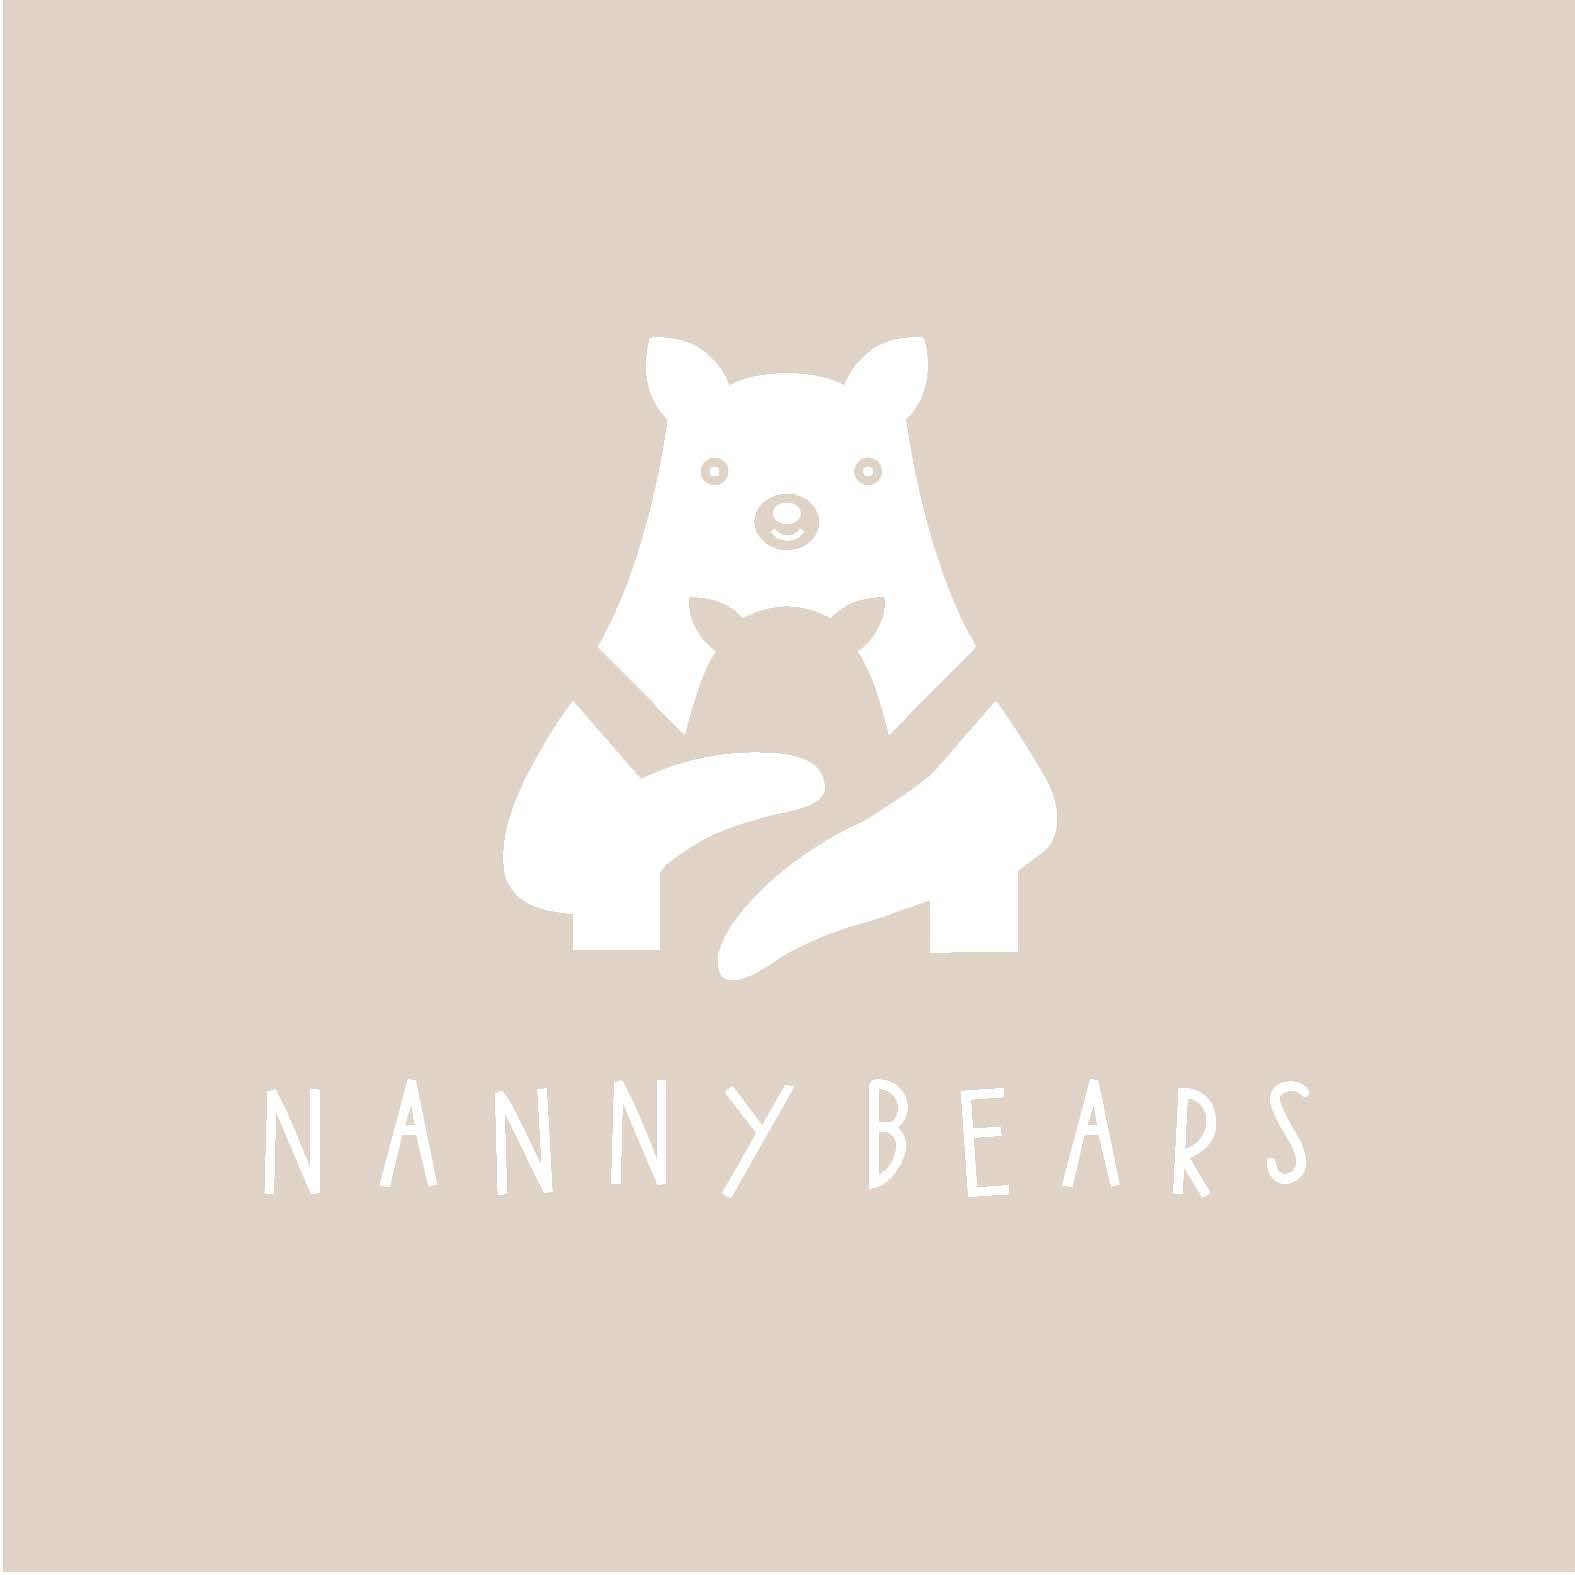 Nanny Bears